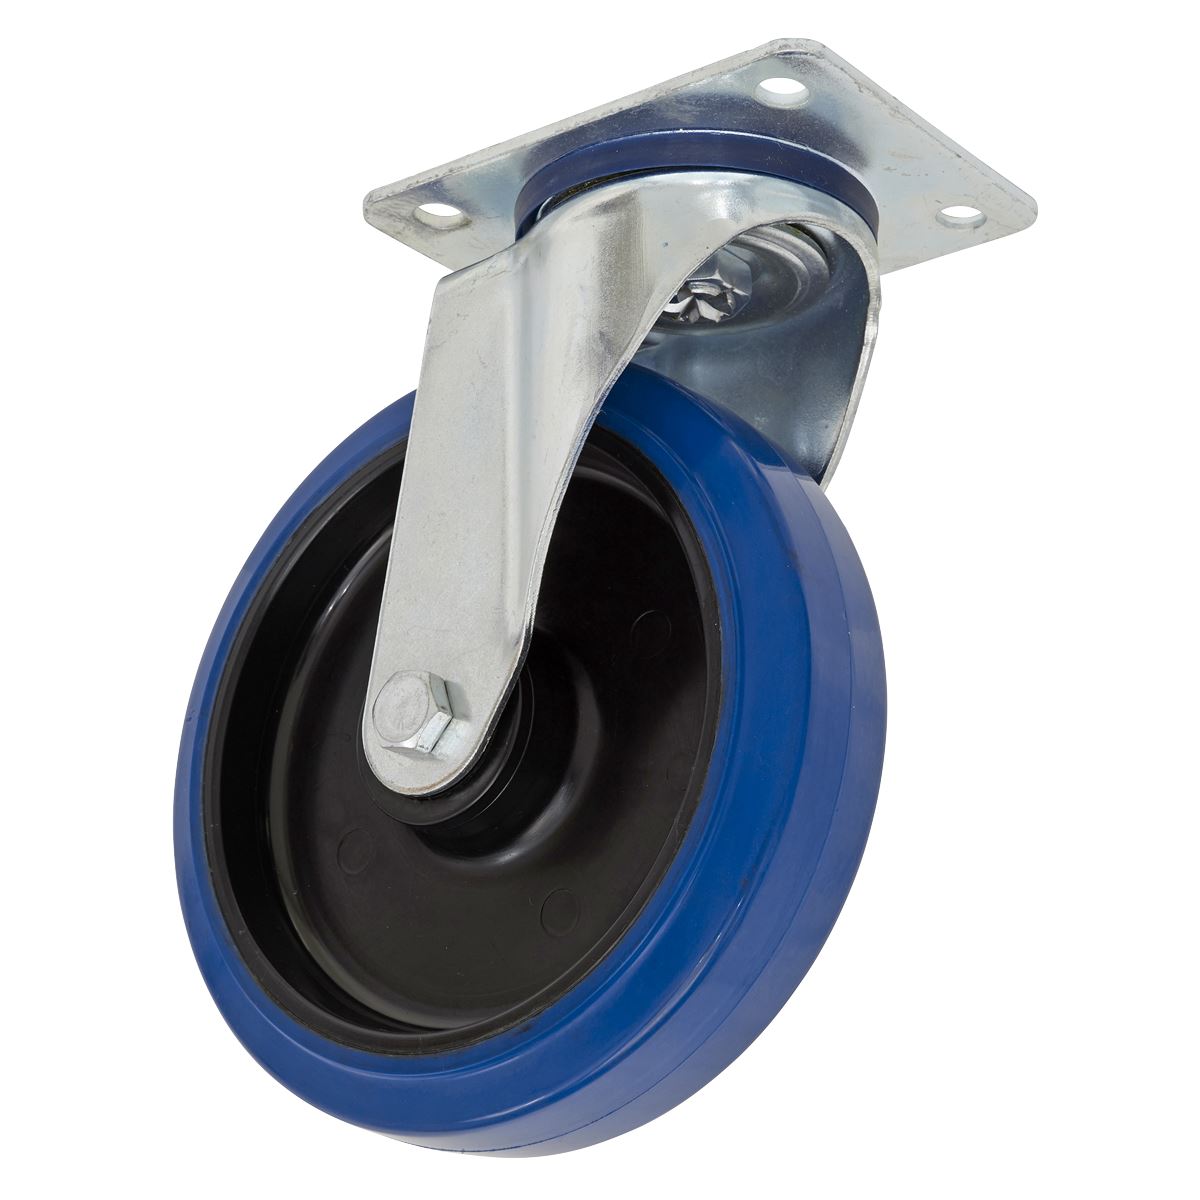 Sealey Heavy-Duty Blue Elastic Rubber Swivel Castor Wheel Ø160mm - Trade